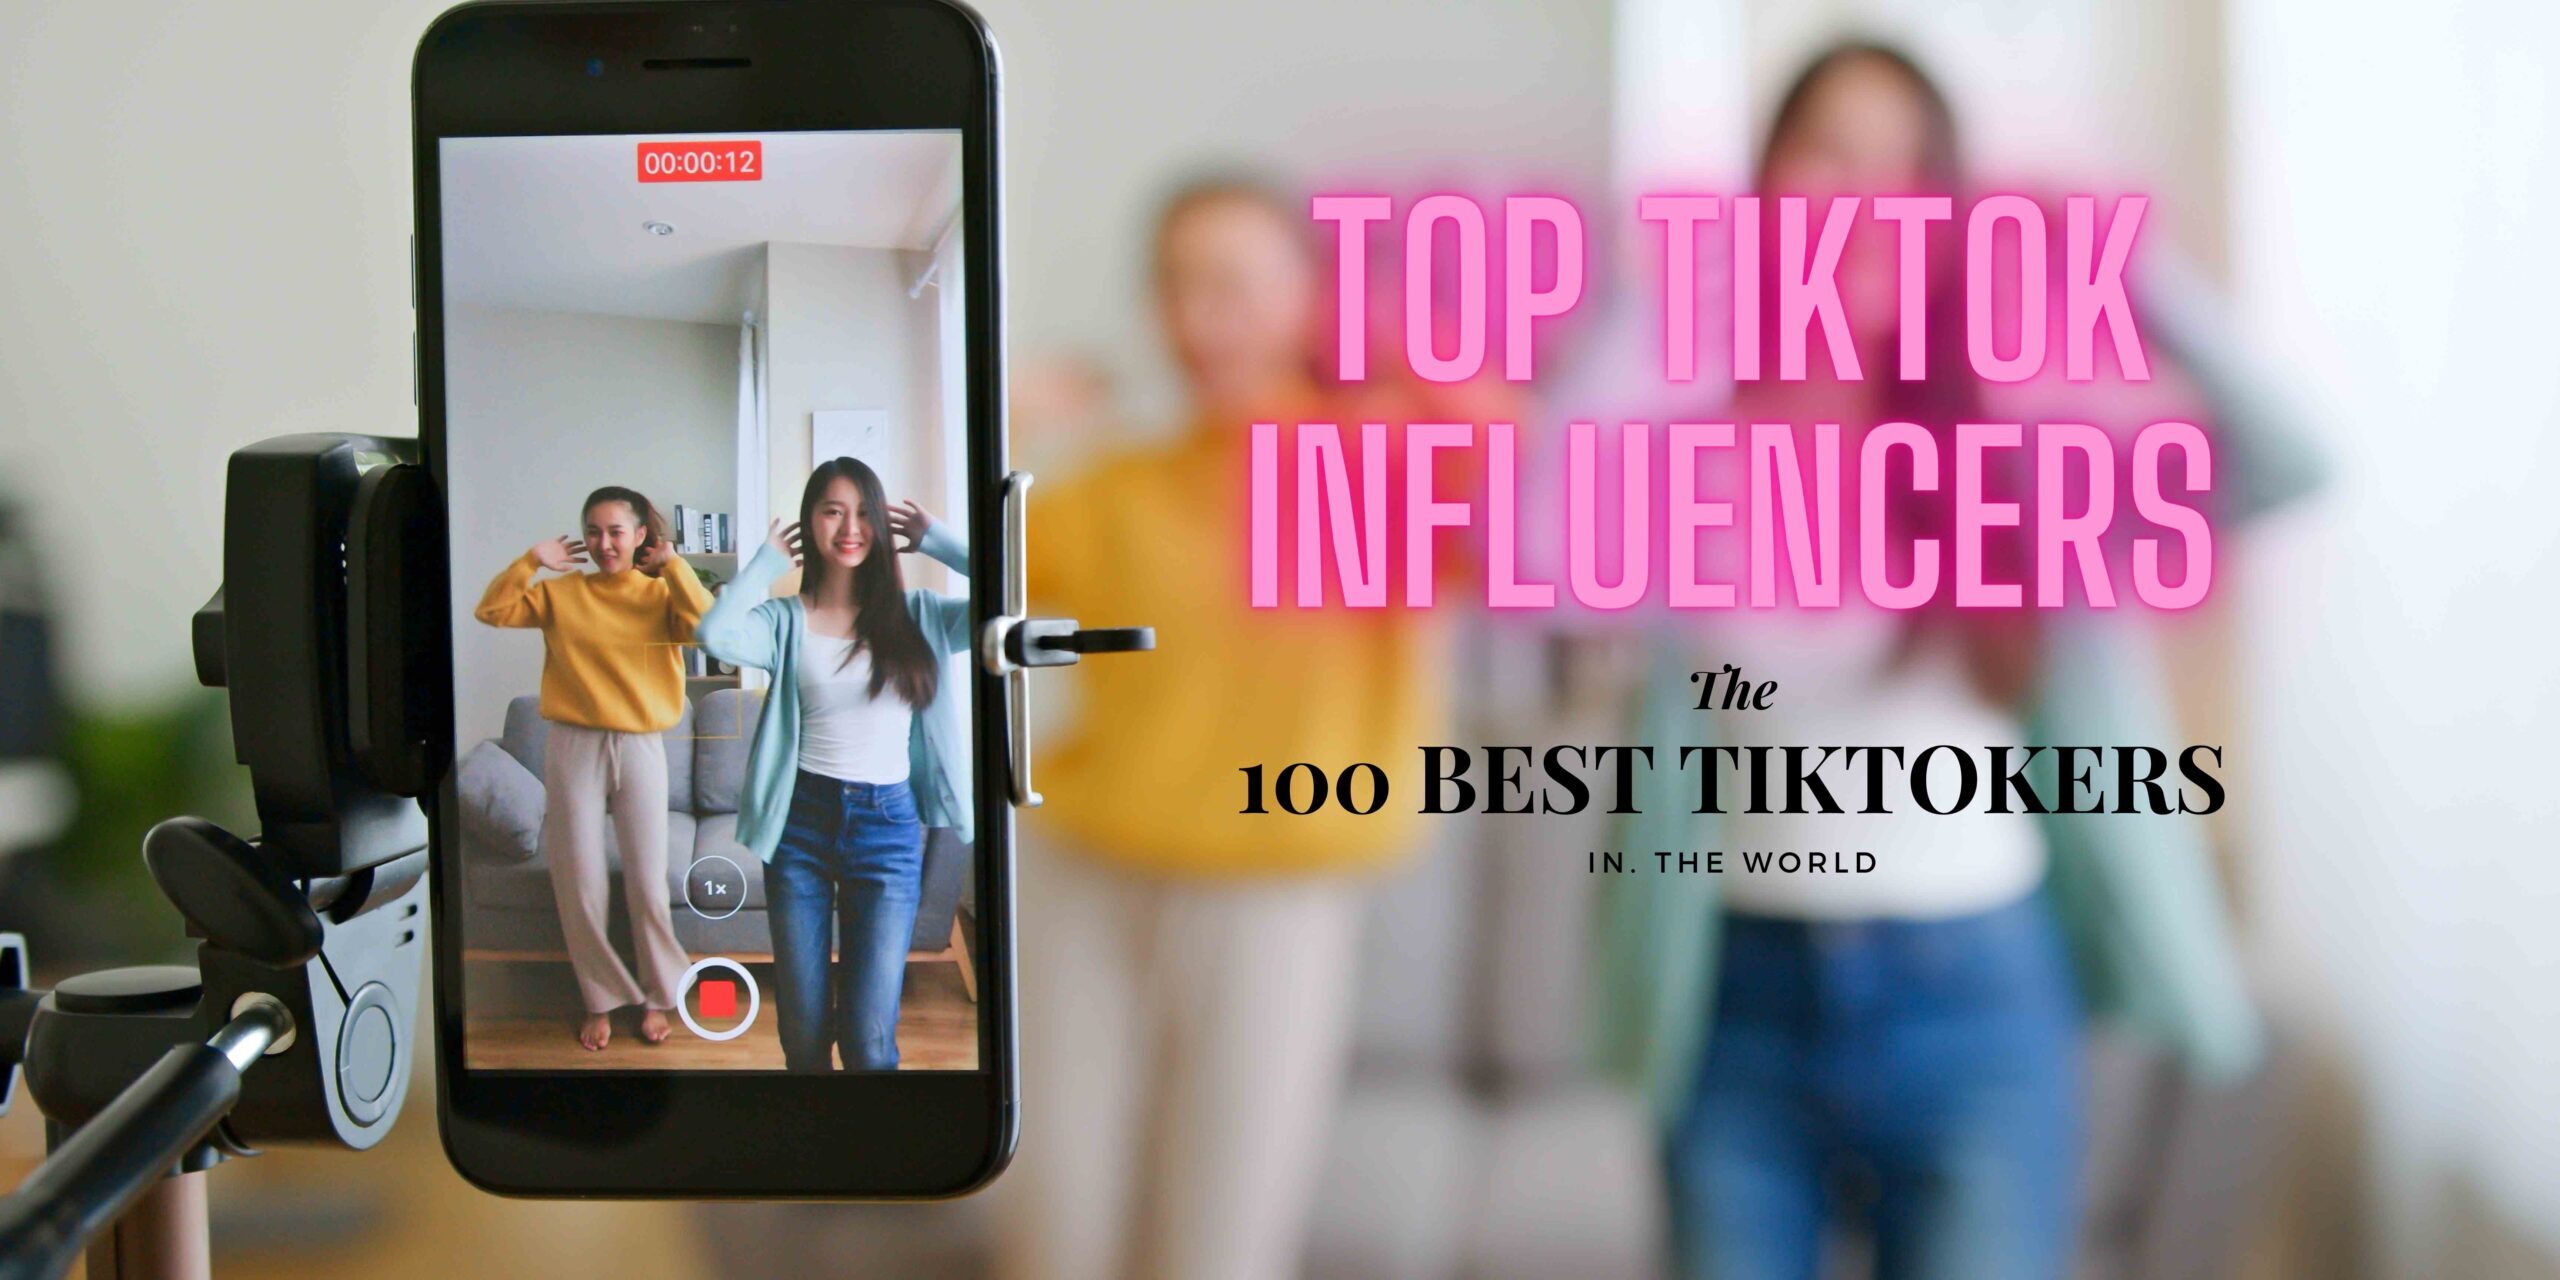 8 TikTok Video Ideas For Fashion Creators